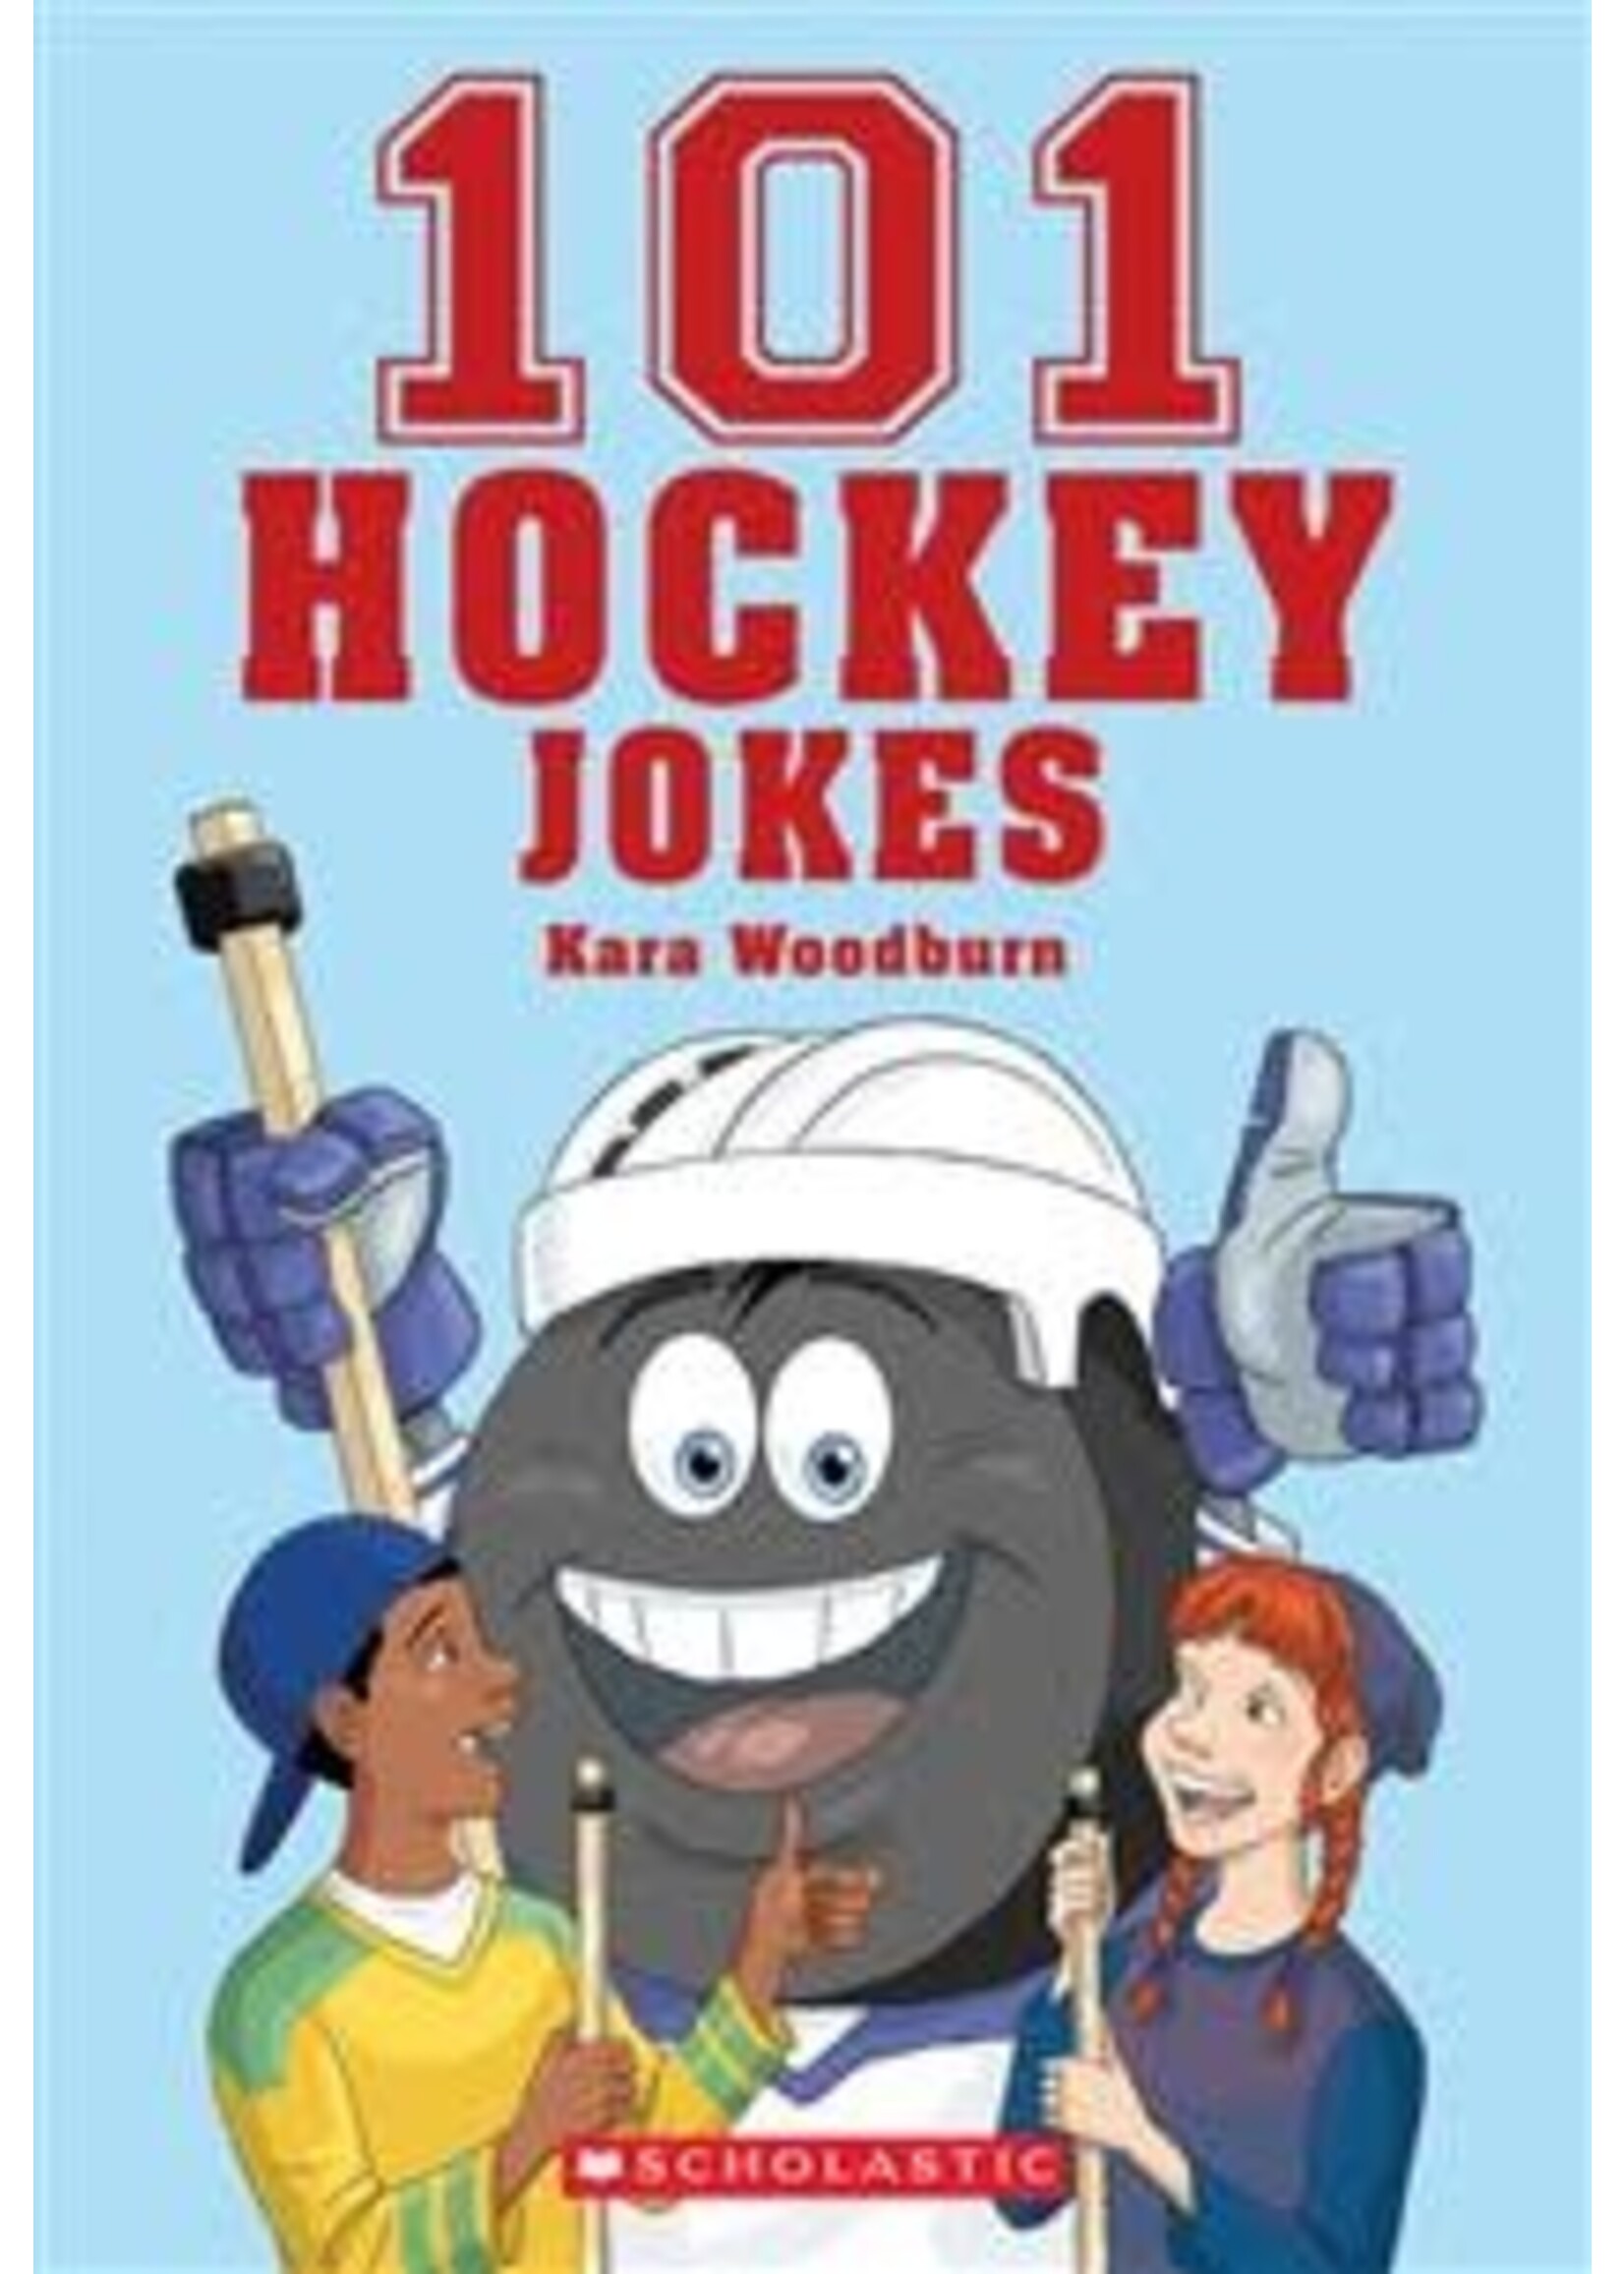 101 Hockey Jokes by Bill Dickson, Kara Woodburn